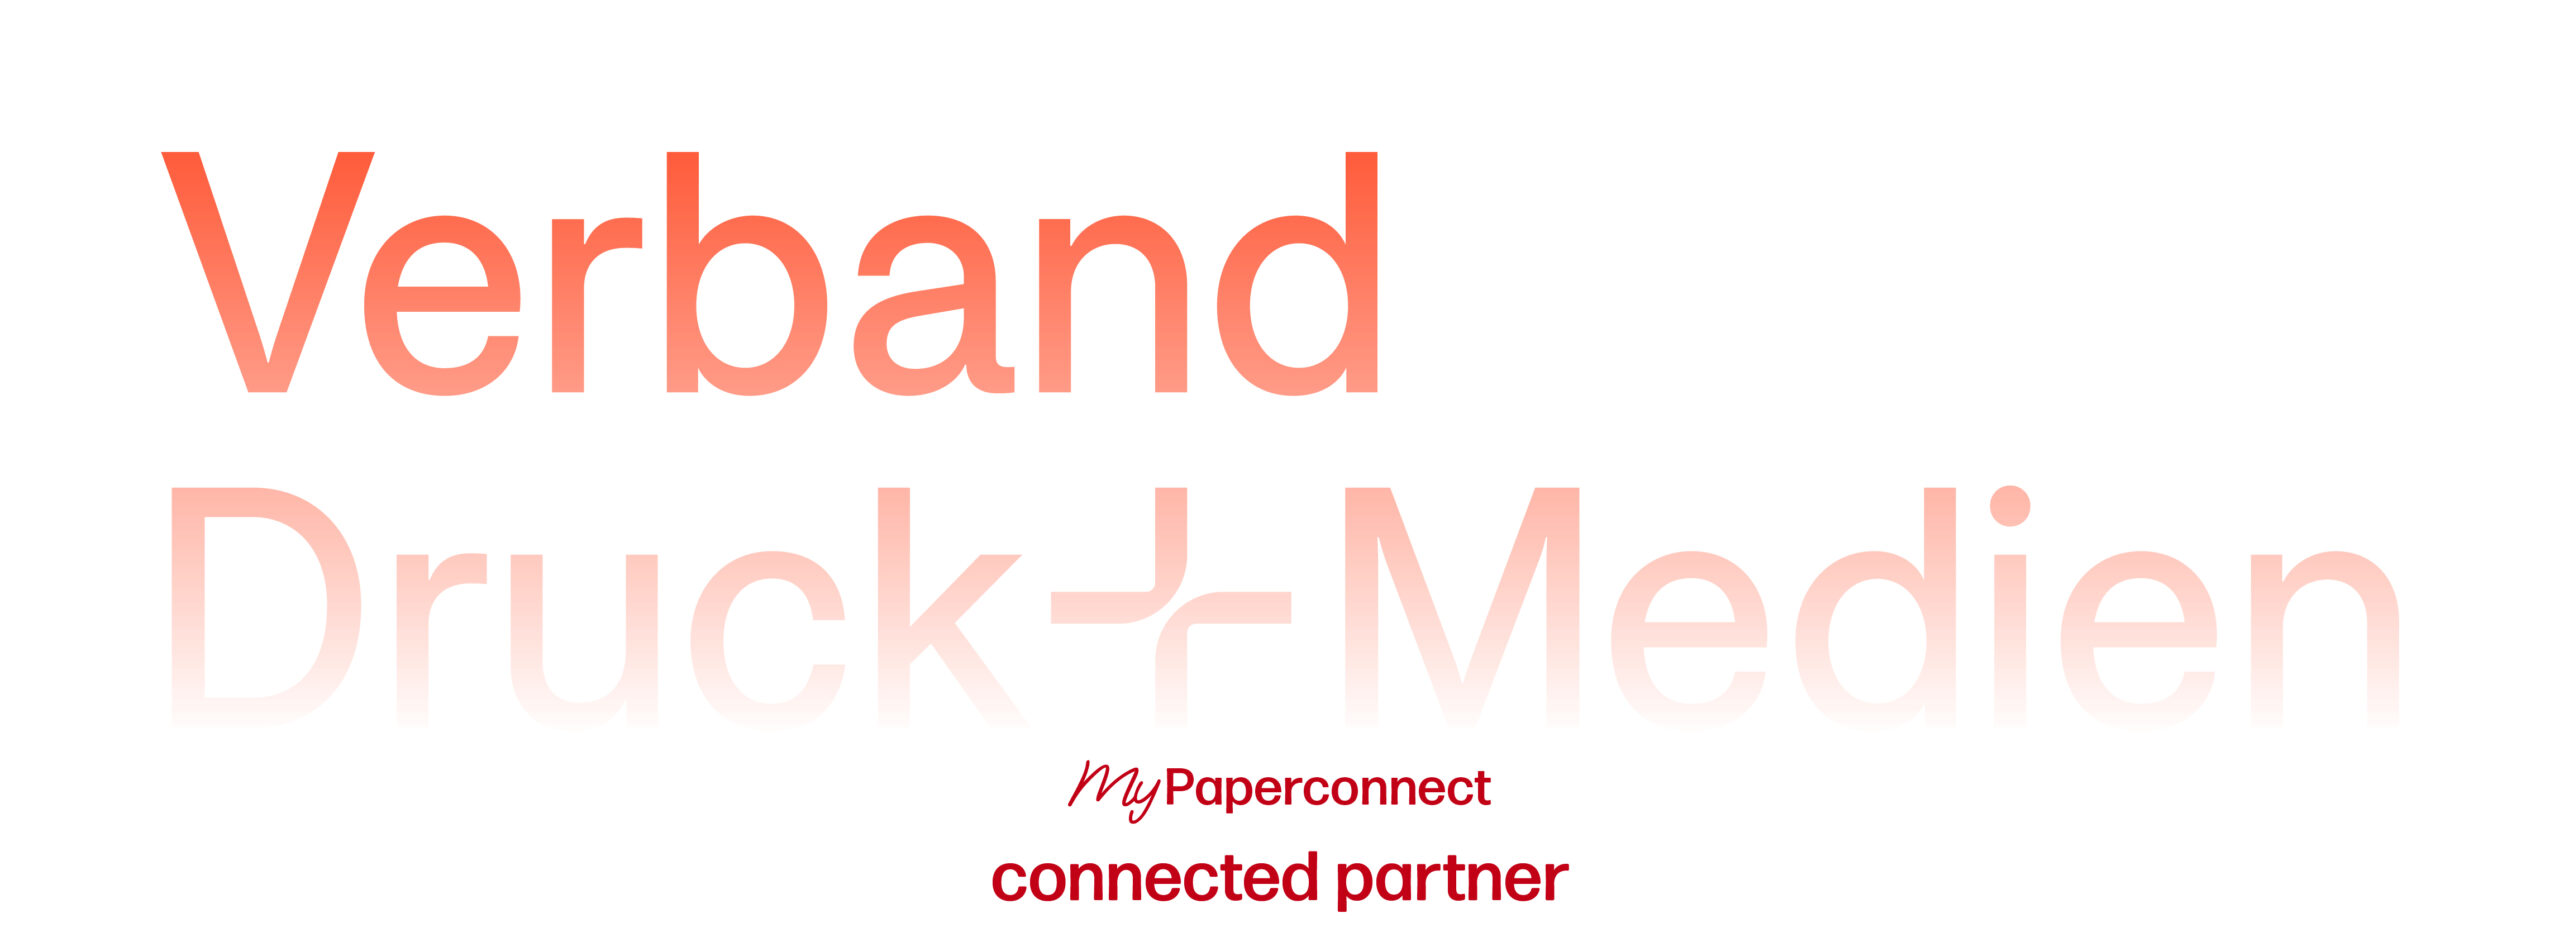 Das Logo des Verbandes Druck + Medien e.V.; darunter sind das rote Logo für "my Paperconnect" und das rote Logo für "connected partner" abgebildet.